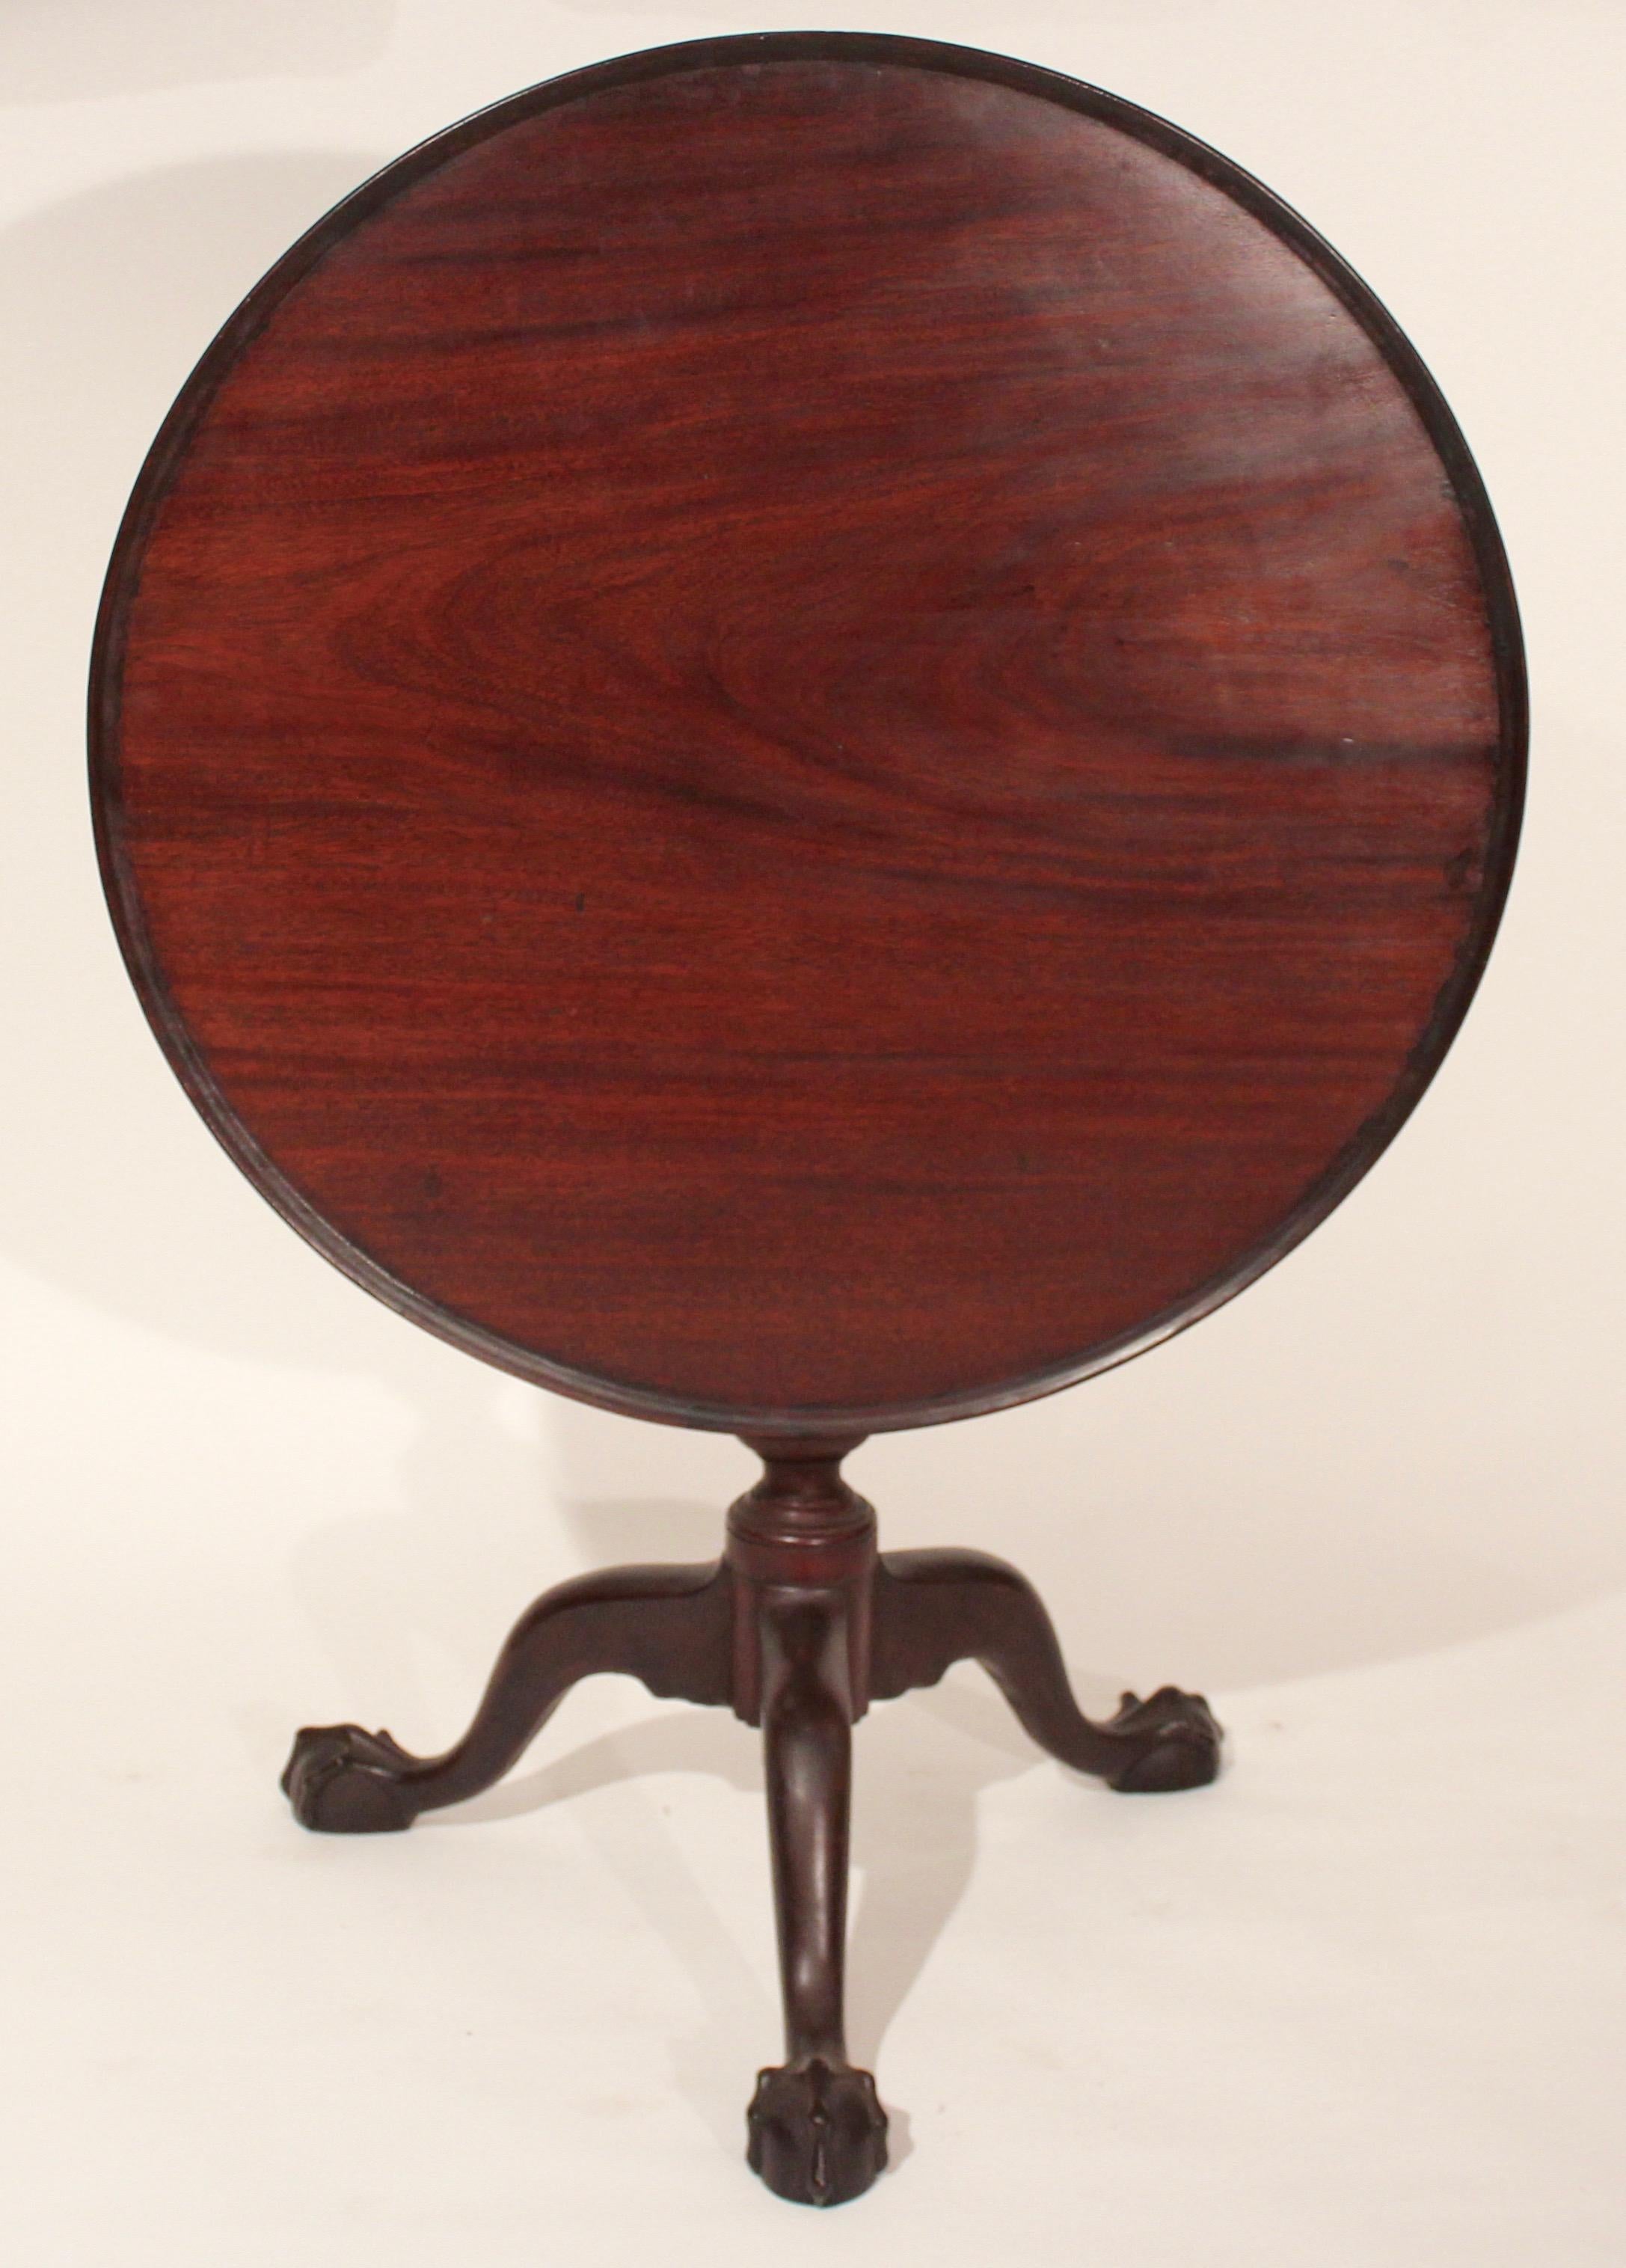 table à thé Chippendale en acajou de Philadelphie du XVIIIe siècle, avec un beau grain figuré sur le dessus, des pieds cabriole à boule supprimée se terminant par des pieds griffes et boule.